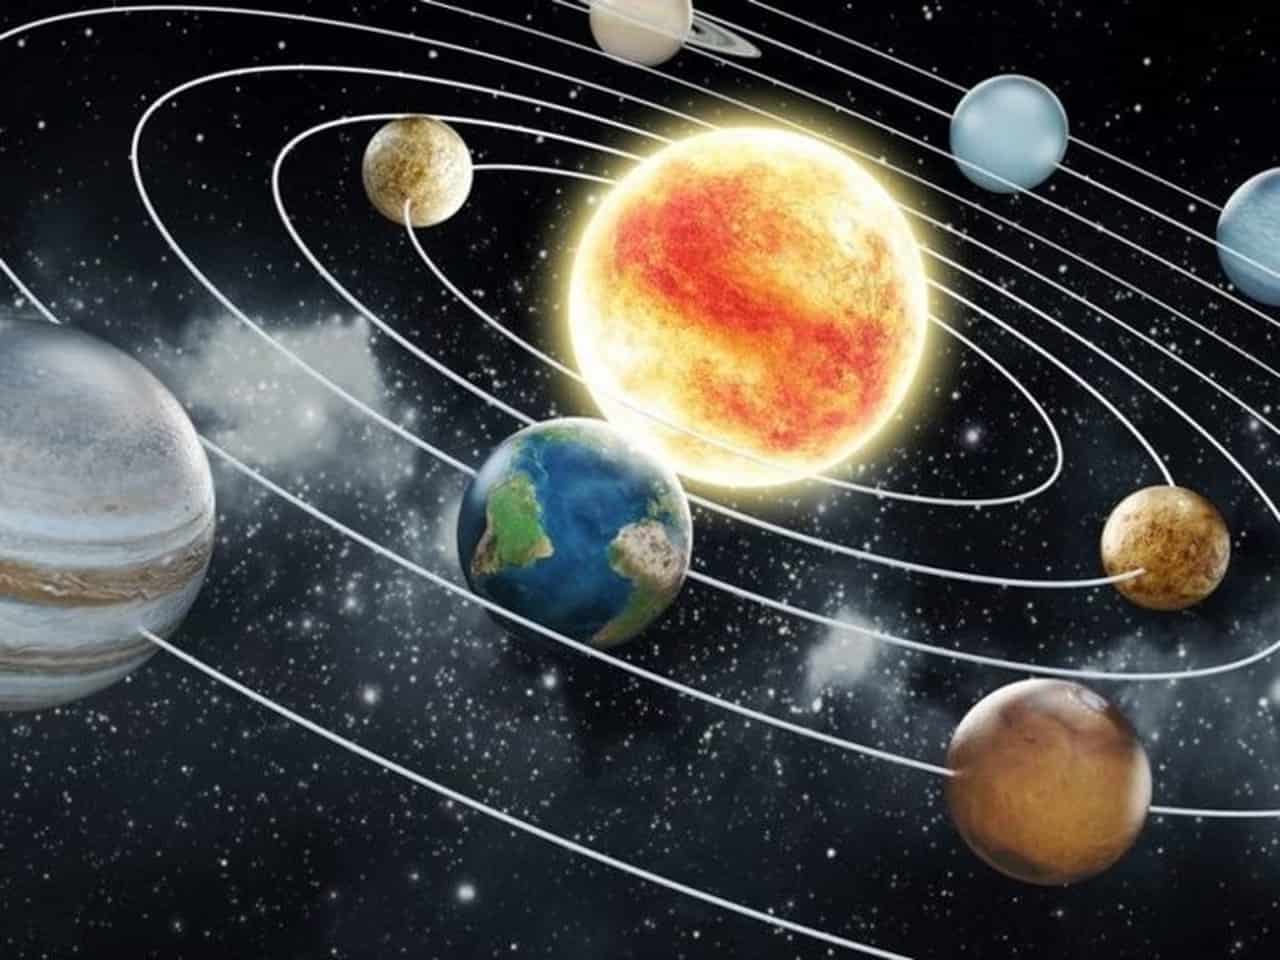 Quỹ đạo: Bạn muốn hiểu rõ hơn về hành tinh của chúng ta và các vật thể di chuyển trong vũ trụ? Hình ảnh về quỹ đạo sẽ giúp bạn thấy rõ hơn sự di chuyển đầy thú vị của các hành tinh và ngôi sao.